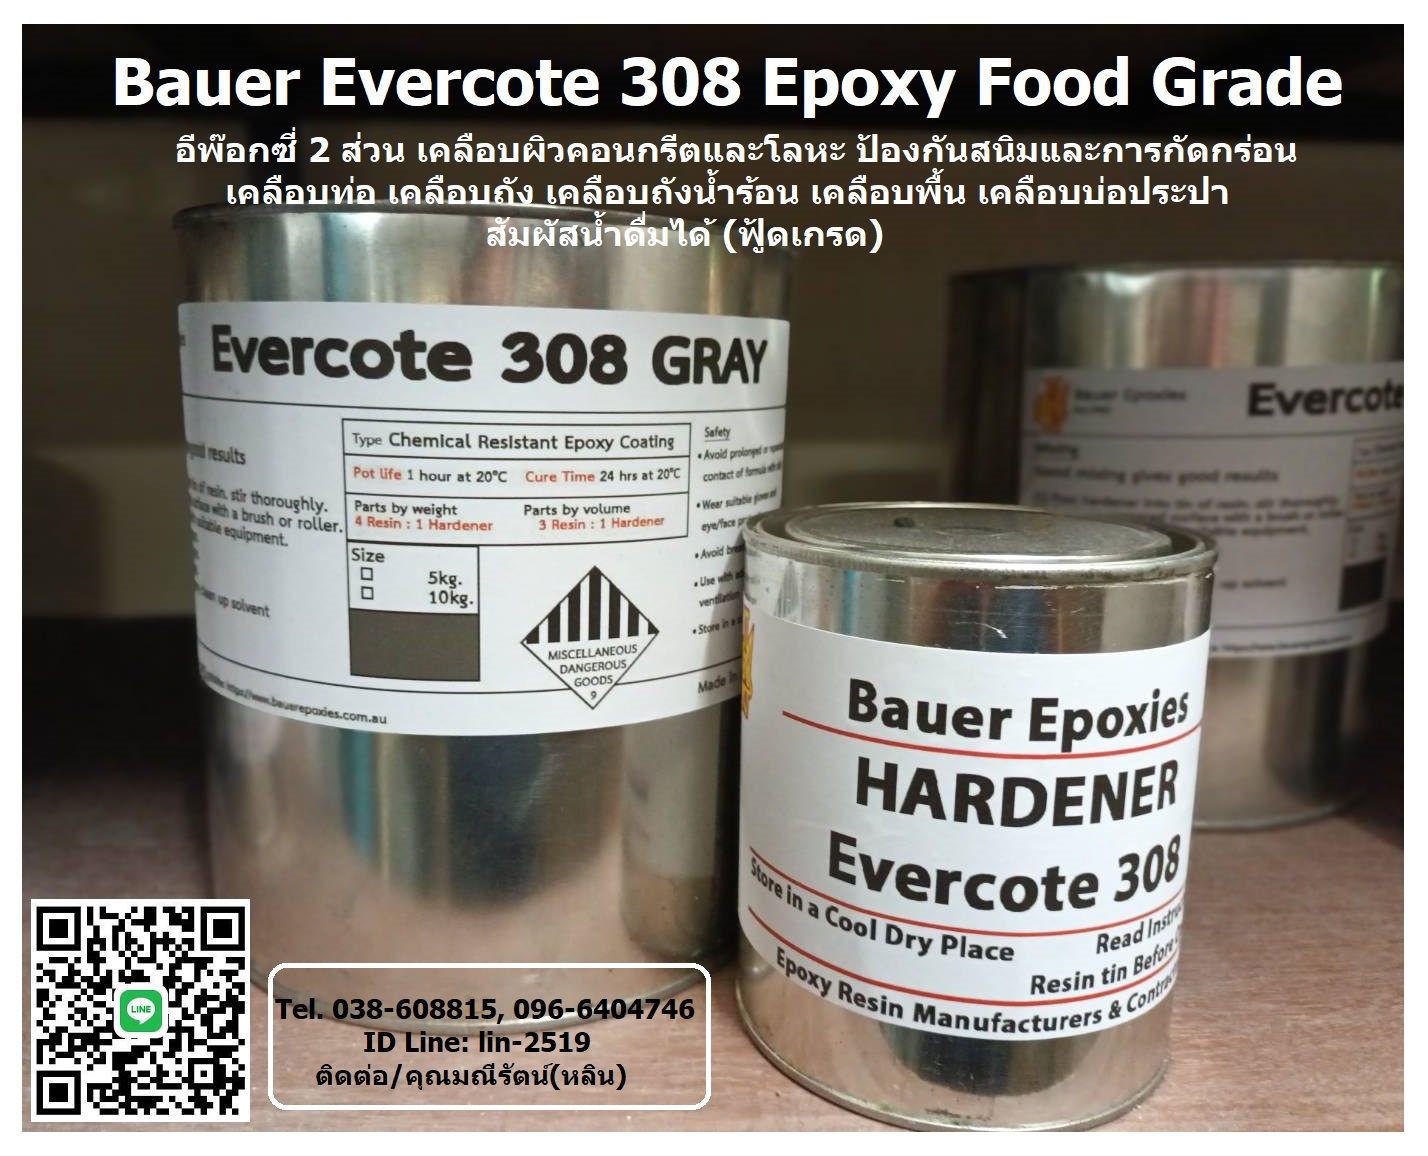 รูปภาพ ​BAUER EVERCOTE 308 Epoxy Food Grade อีพ๊อกซี่เซรามิค 2 ส่วน ใช้เคลือบโลหะและคอนกรีตเพื่อป้องกันสนิมและสารเคมี ไม่เกิดเชื้อรา สามารถสัมผัสอาหารได้